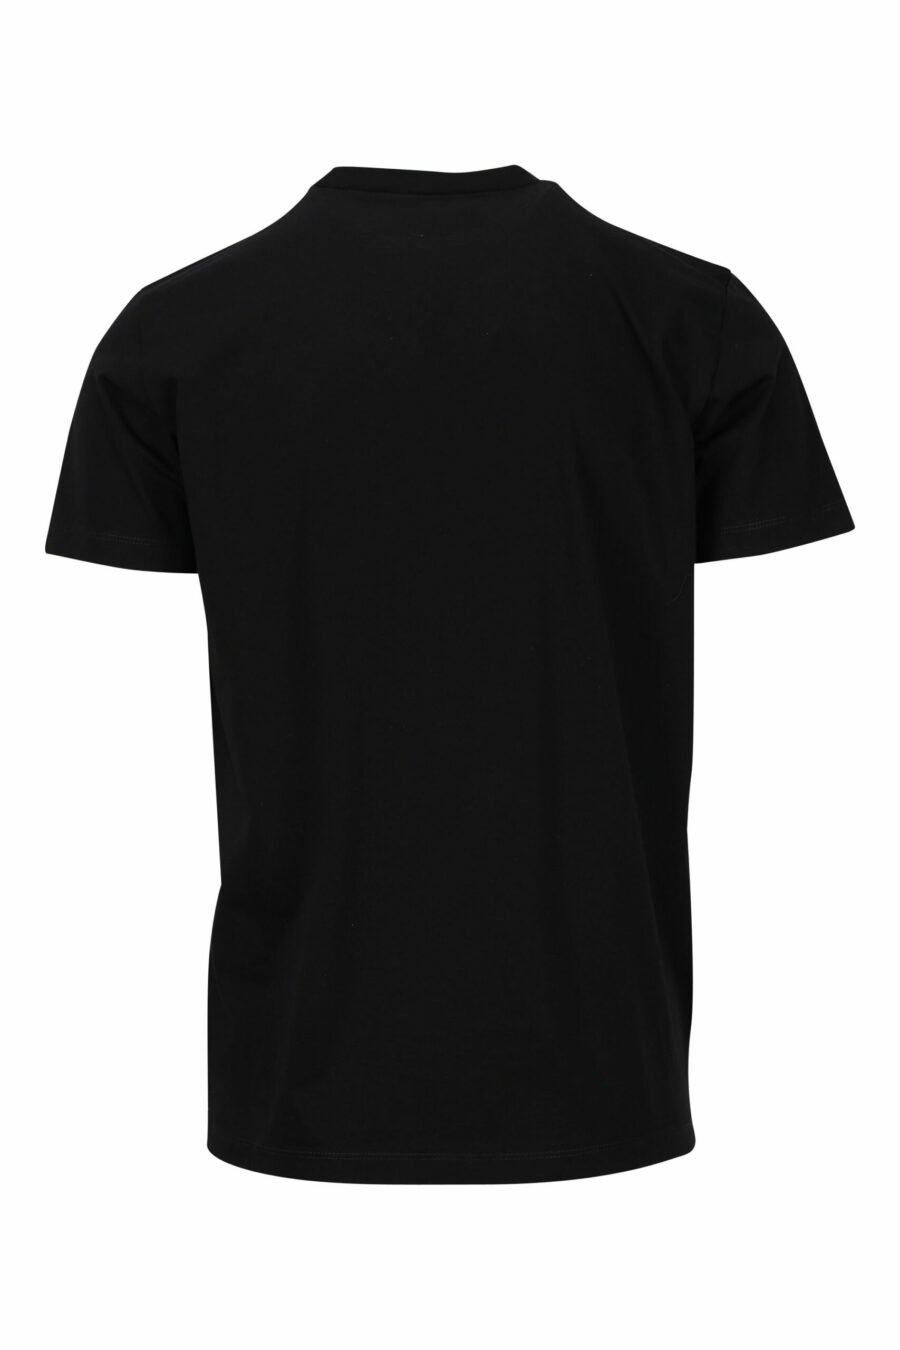 T-shirt preta com maxilogo "college" azul - 8054148086510 1 à escala